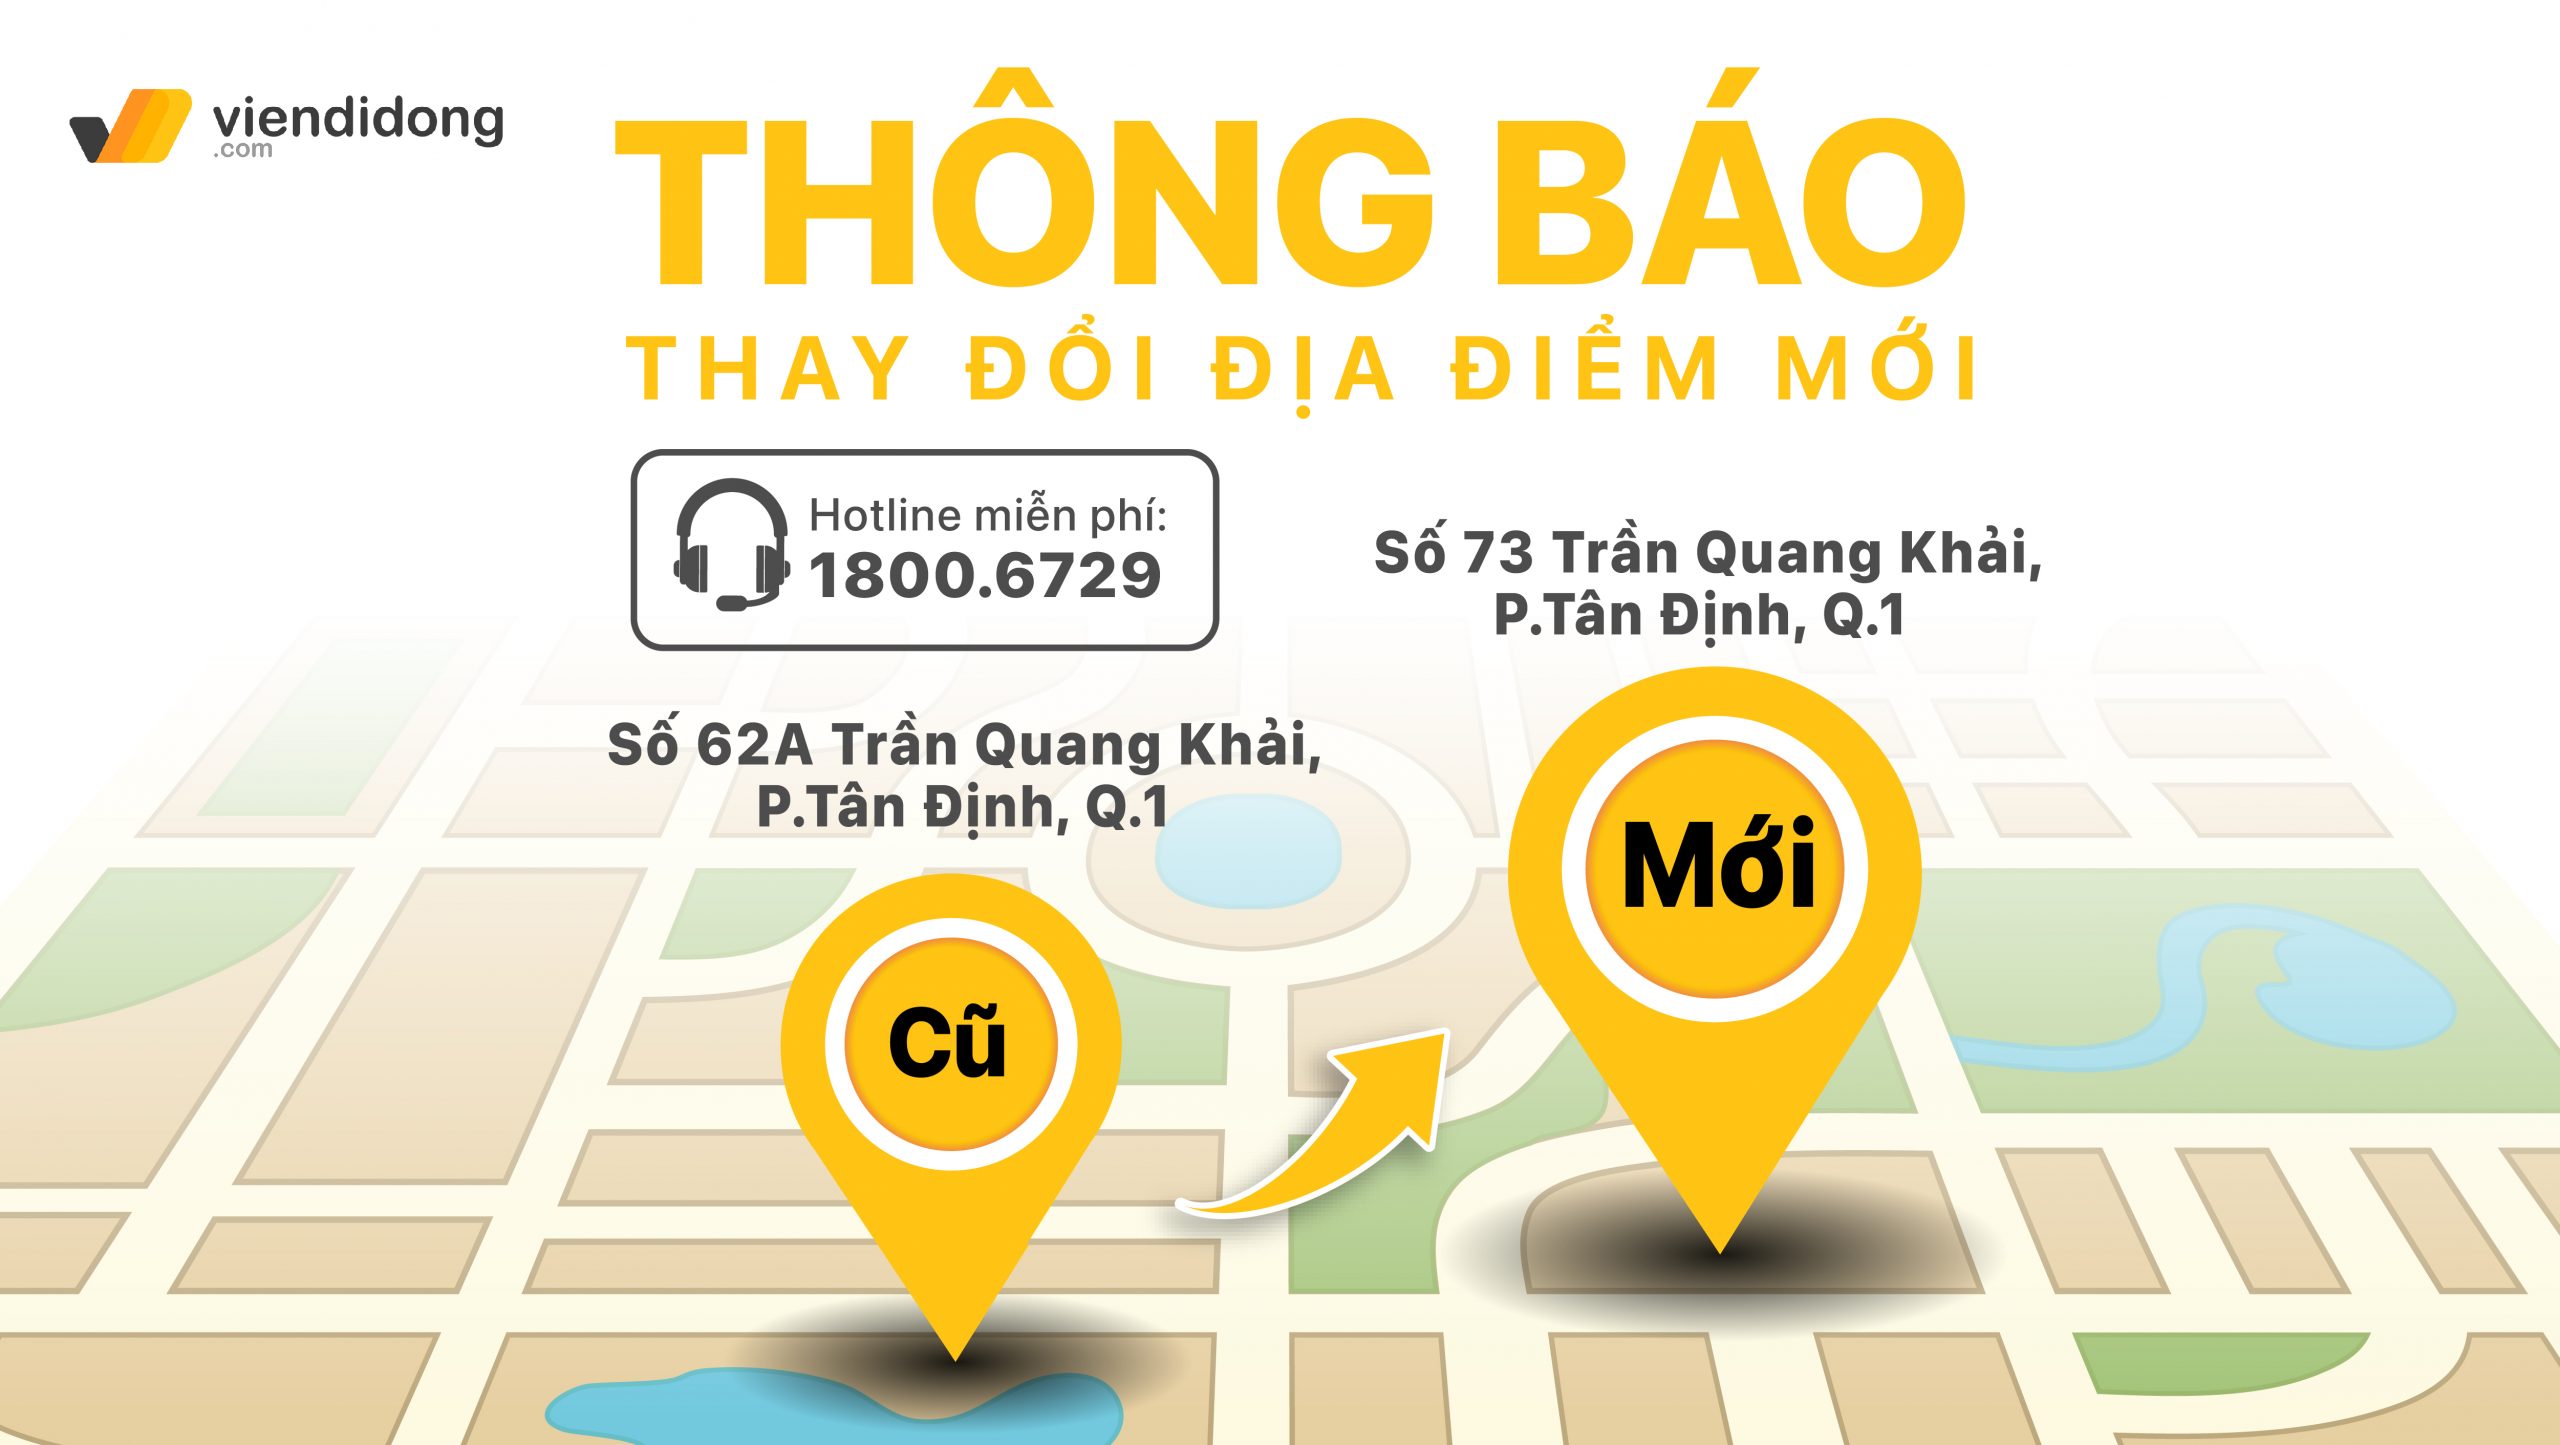 Viện Di Động chuyển đổi sang địa chỉ mới là 73 Trần Quang Khải, Phường Tân Định, Quận 1, TP.HCM